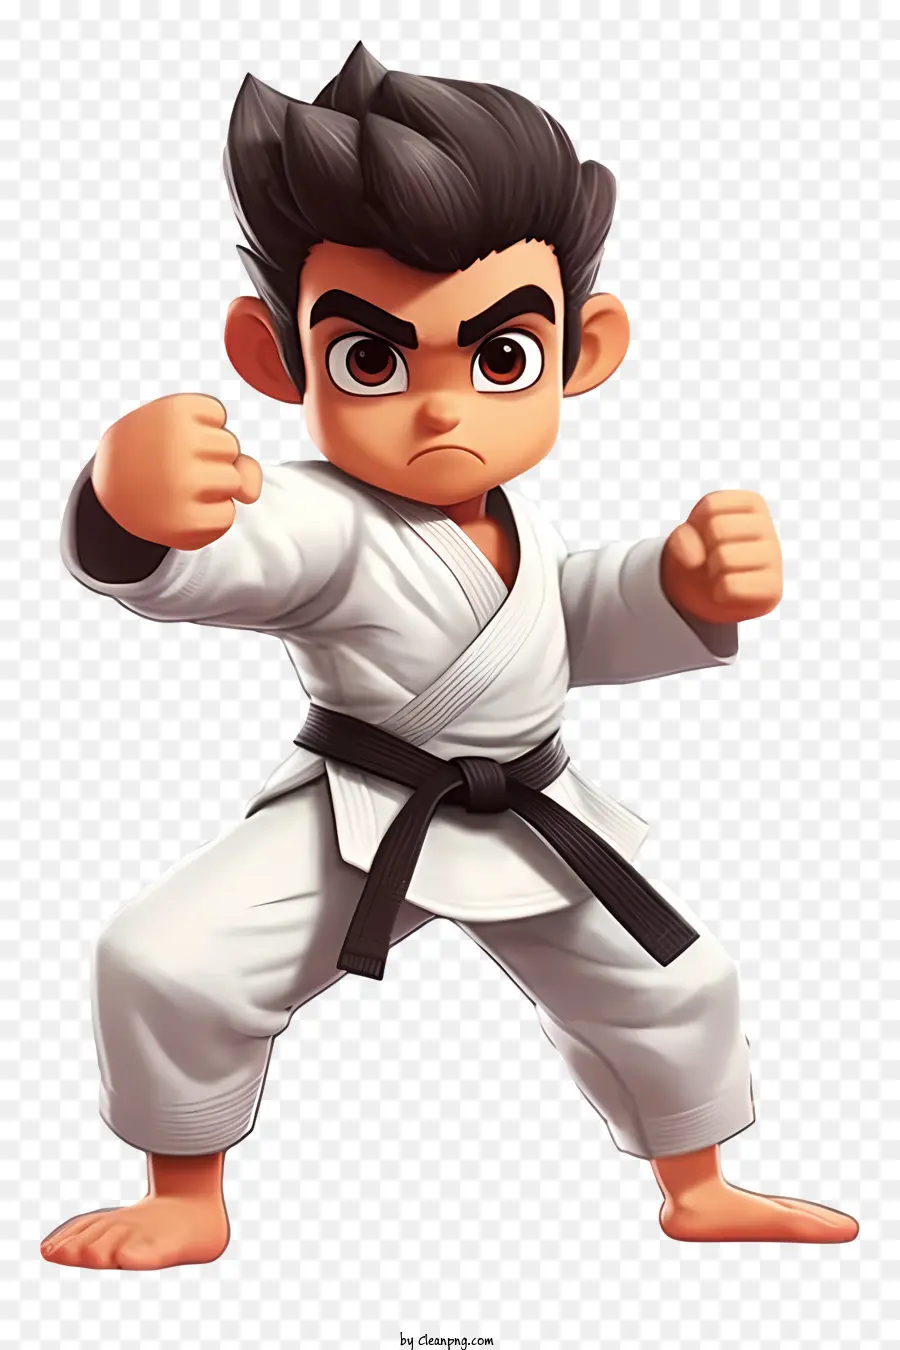 Karate chiến đấu karate võ thuật karate karate gi - Hình minh họa của chàng trai trẻ trong tư thế karate